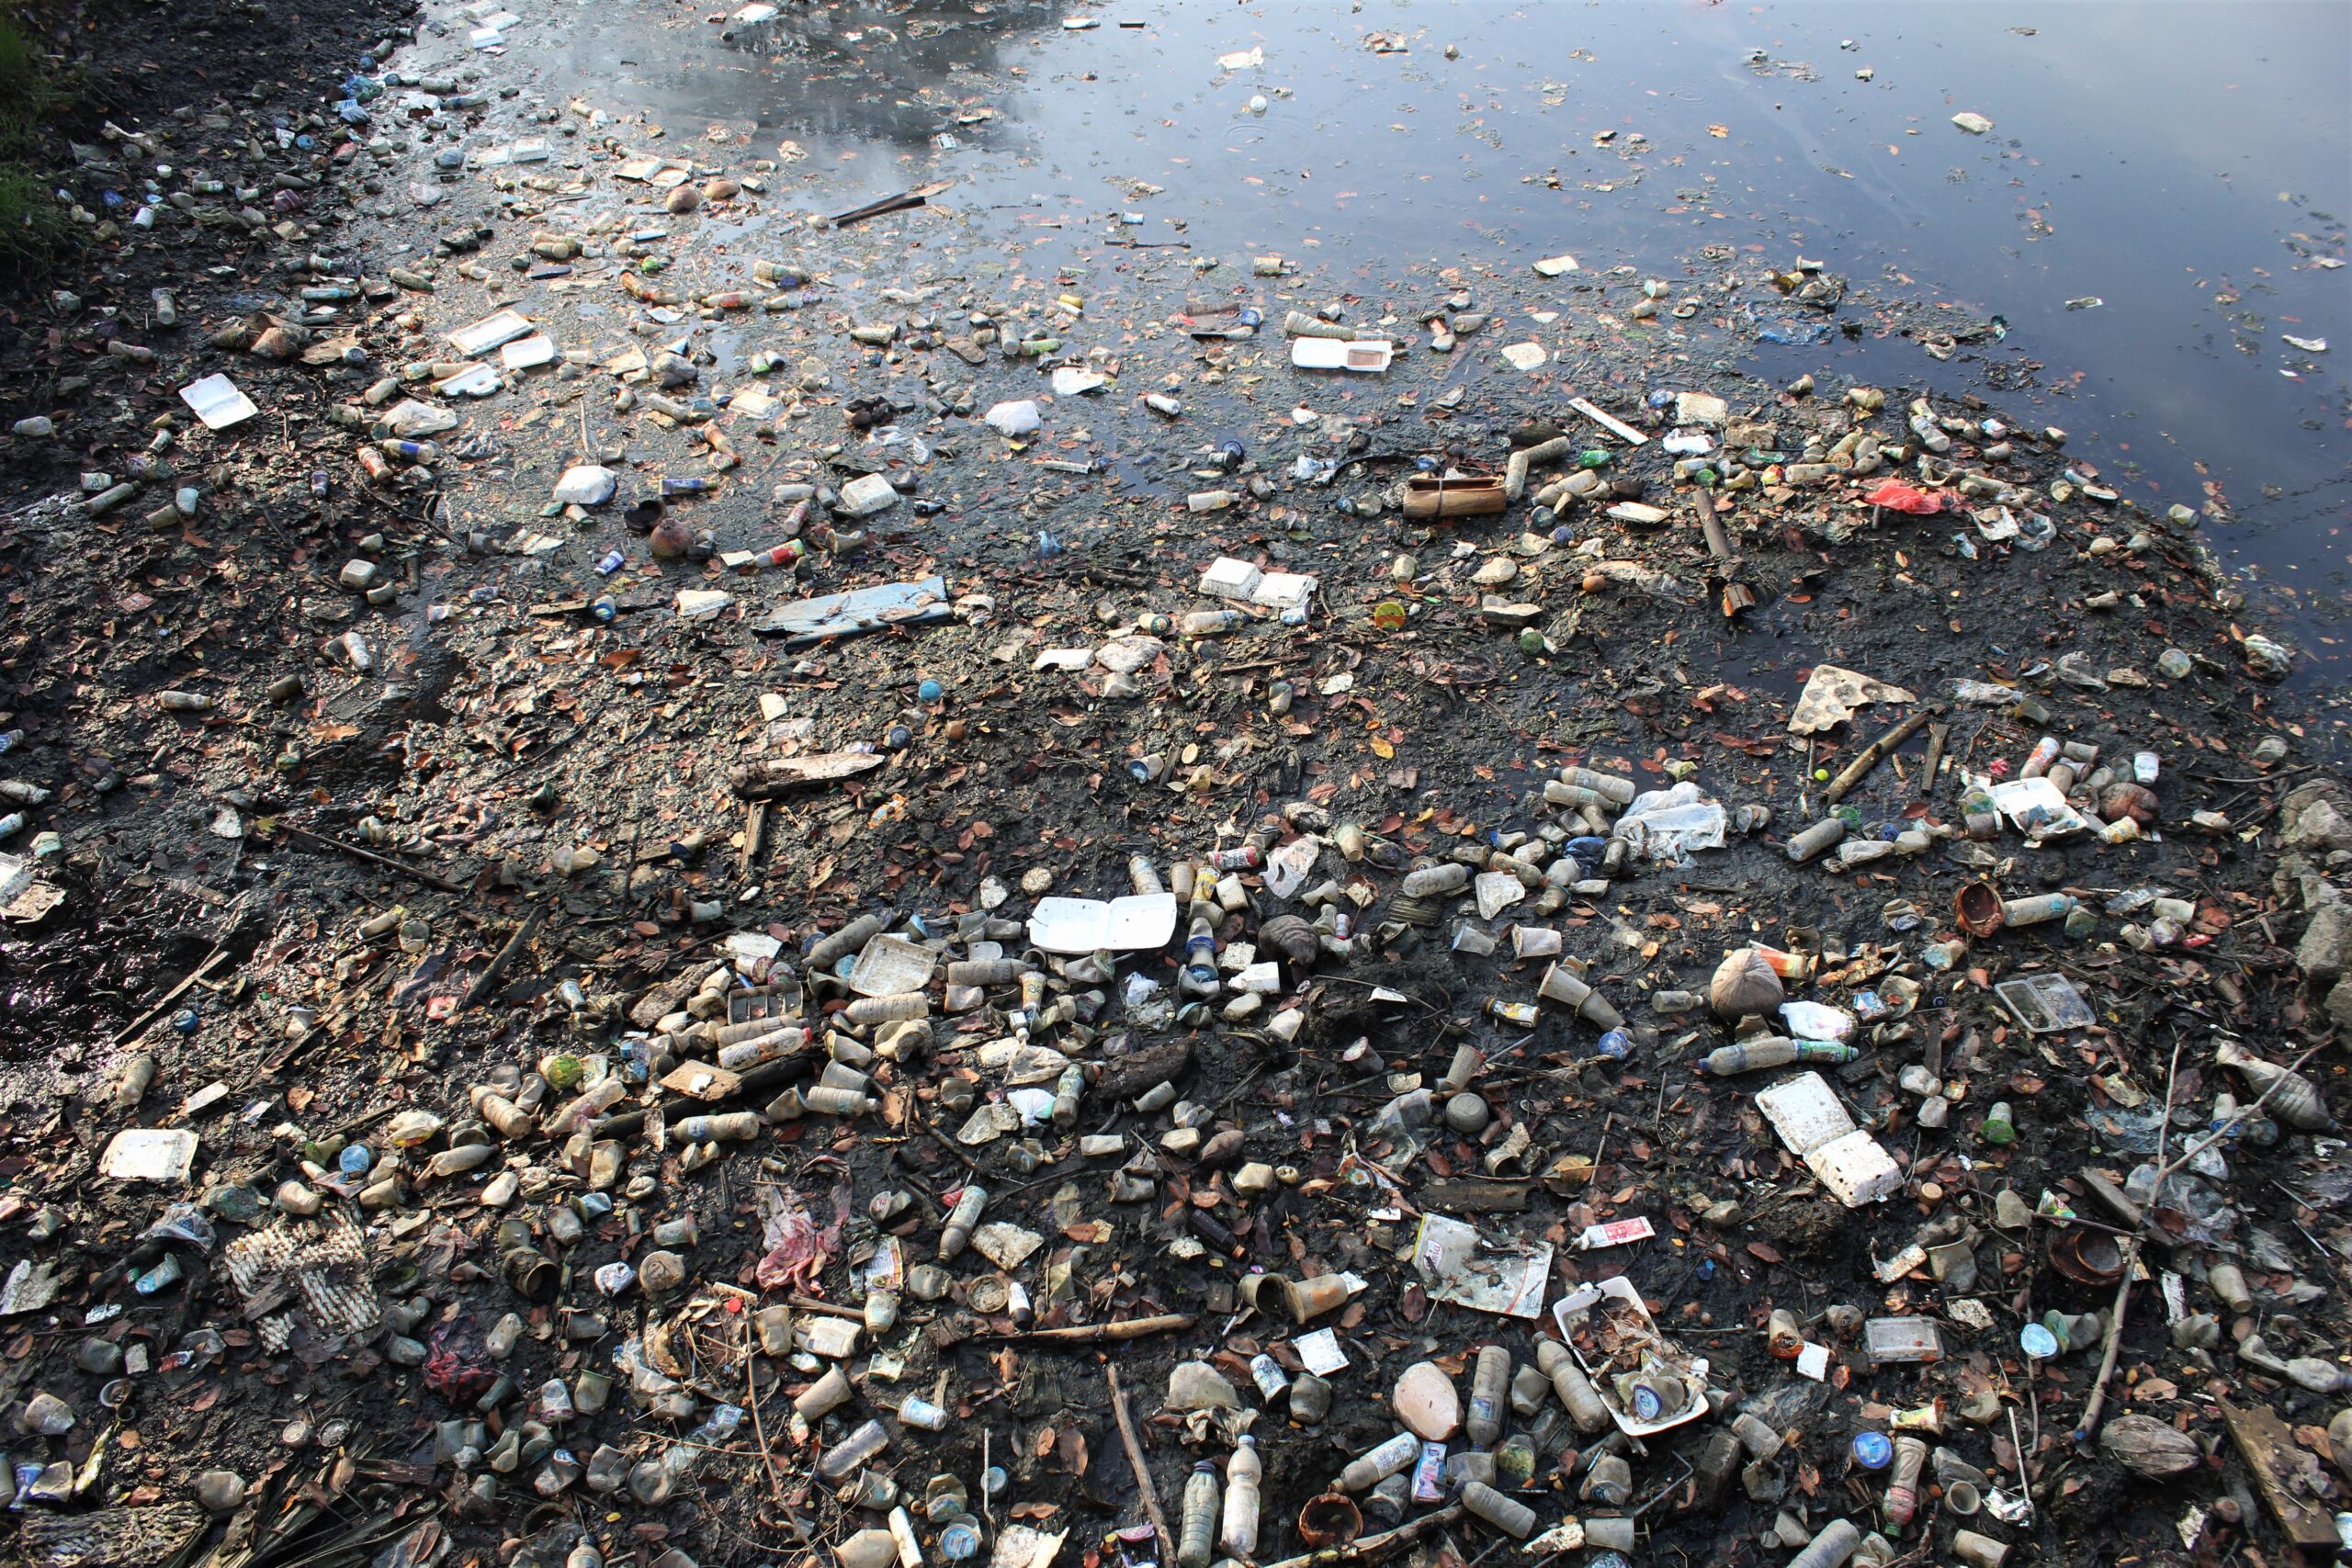 Sampah plastik penuhi sungai Lampriet, sungai mulai mengering pasca kemarau, Banda Aceh, Senin 10/4/2023. FOTO/Lensakita.com/Mardili